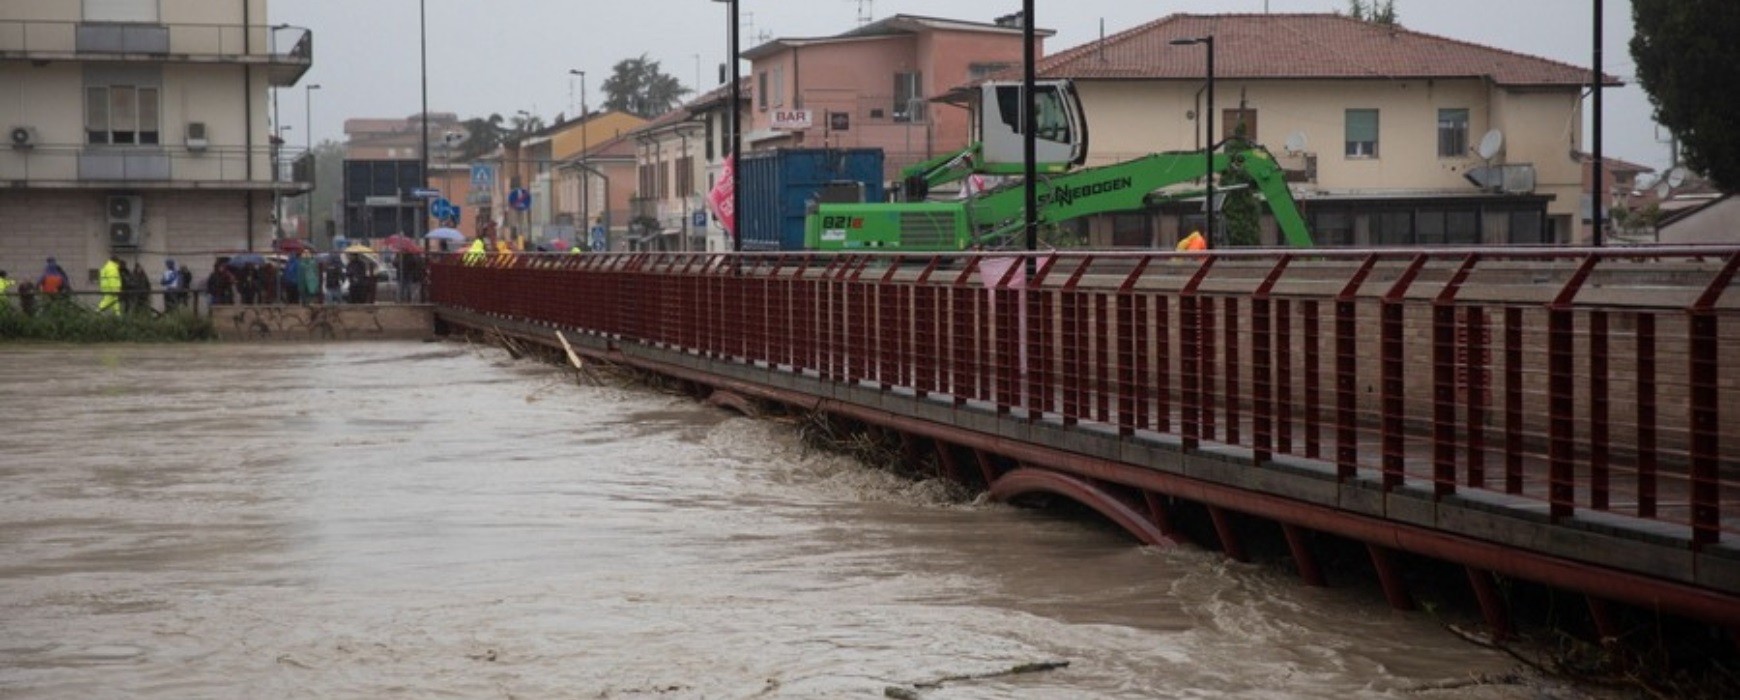 Ιταλία: Καταστροφικές πλημμύρες με θύματα και χιλιάδες άστεγους – Σκηνές ολέθρου